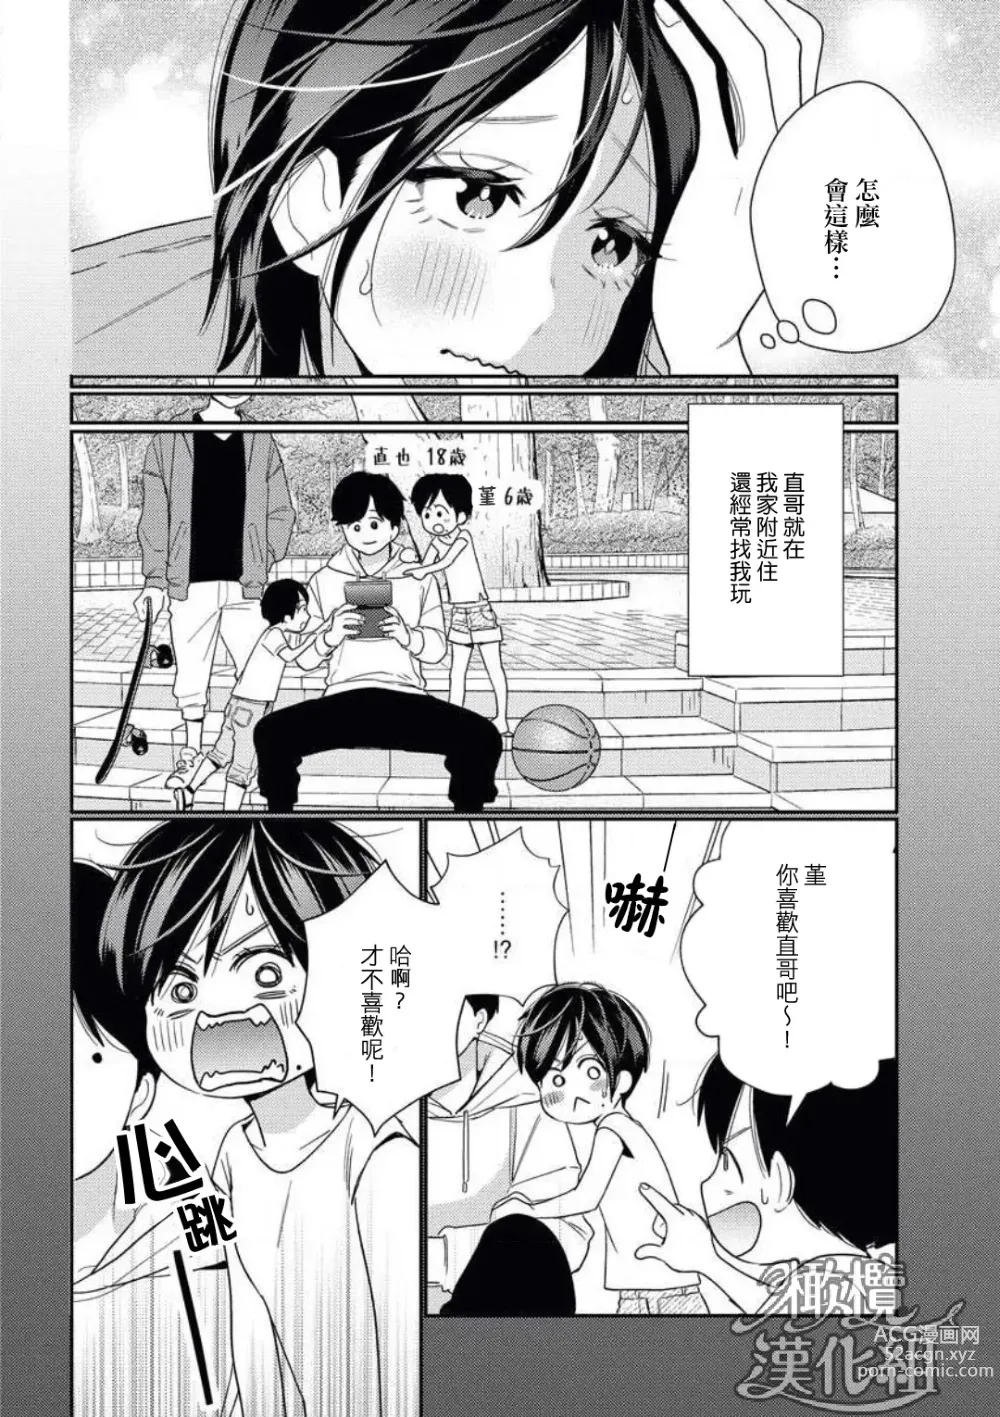 Page 6 of manga 青梅竹马难以攻陷被小黄话（※正当工作需求）玩弄一番